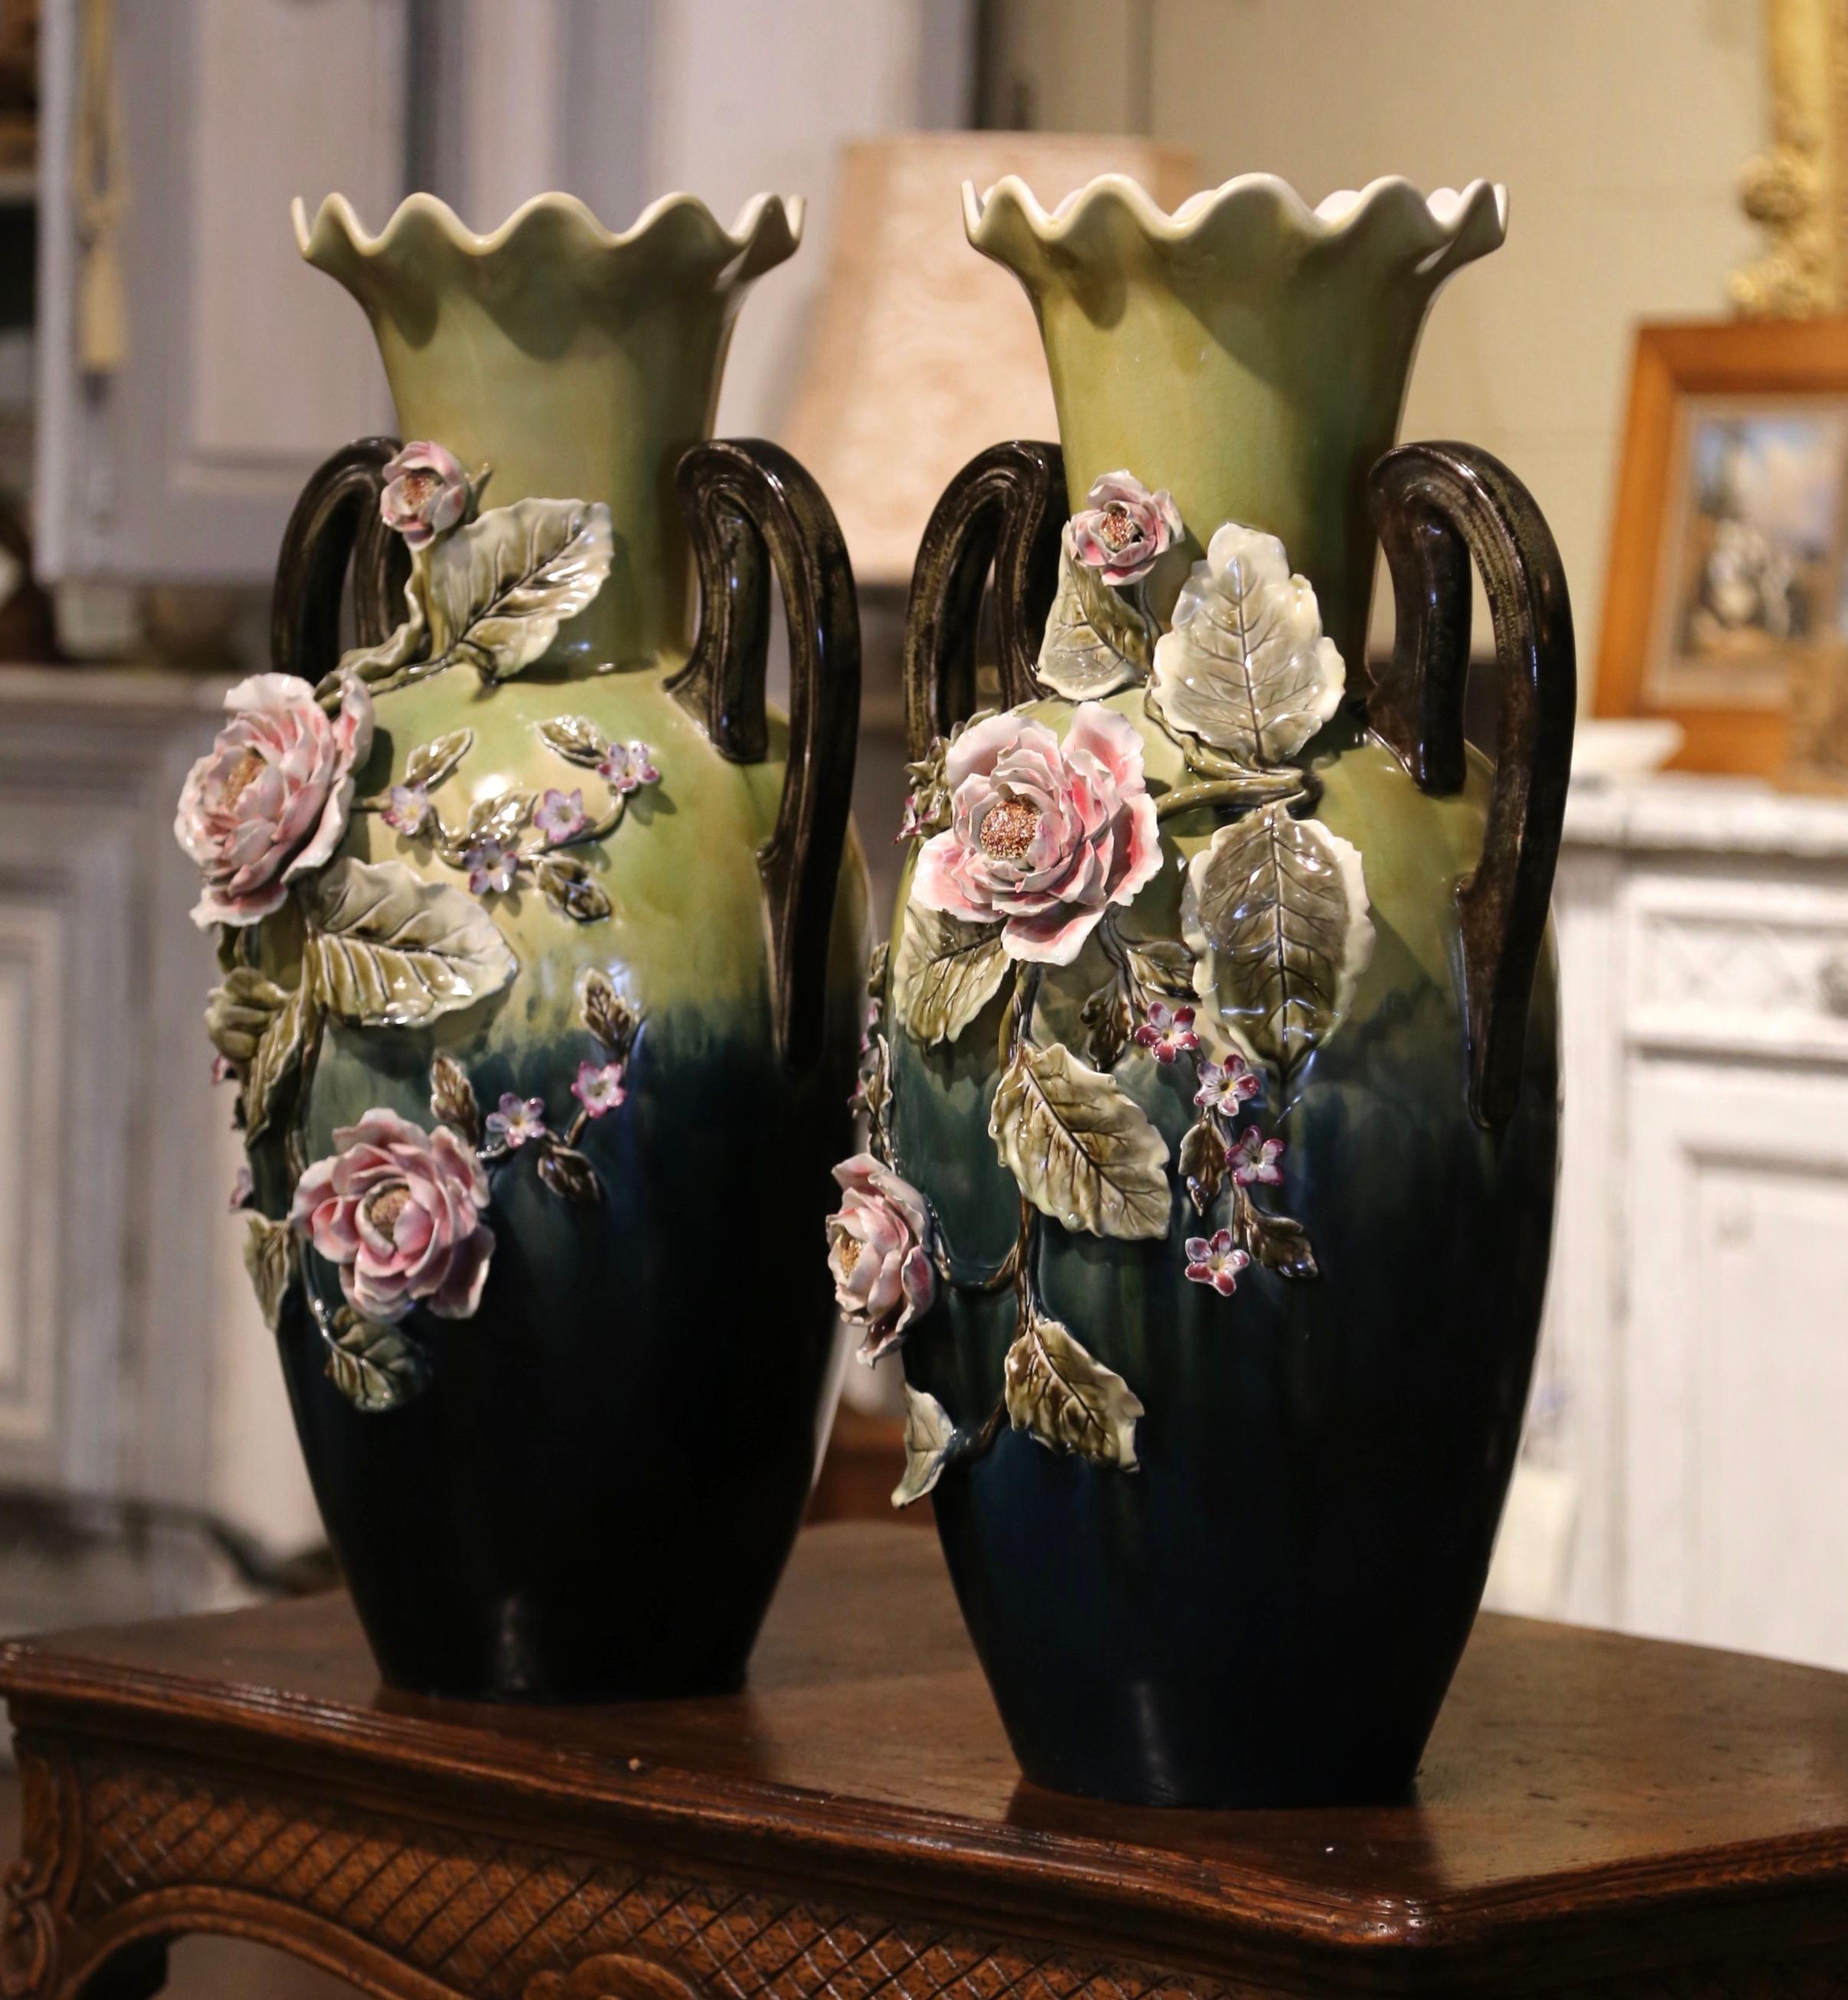 Magnifiquement sculptée et colorée, cette paire de grands vases anciens en majolique serait un merveilleux ajout à une cheminée, une table ou une étagère. Fabriqué en France, vers 1950, chaque pièce peinte à la main présente deux poignées élégamment